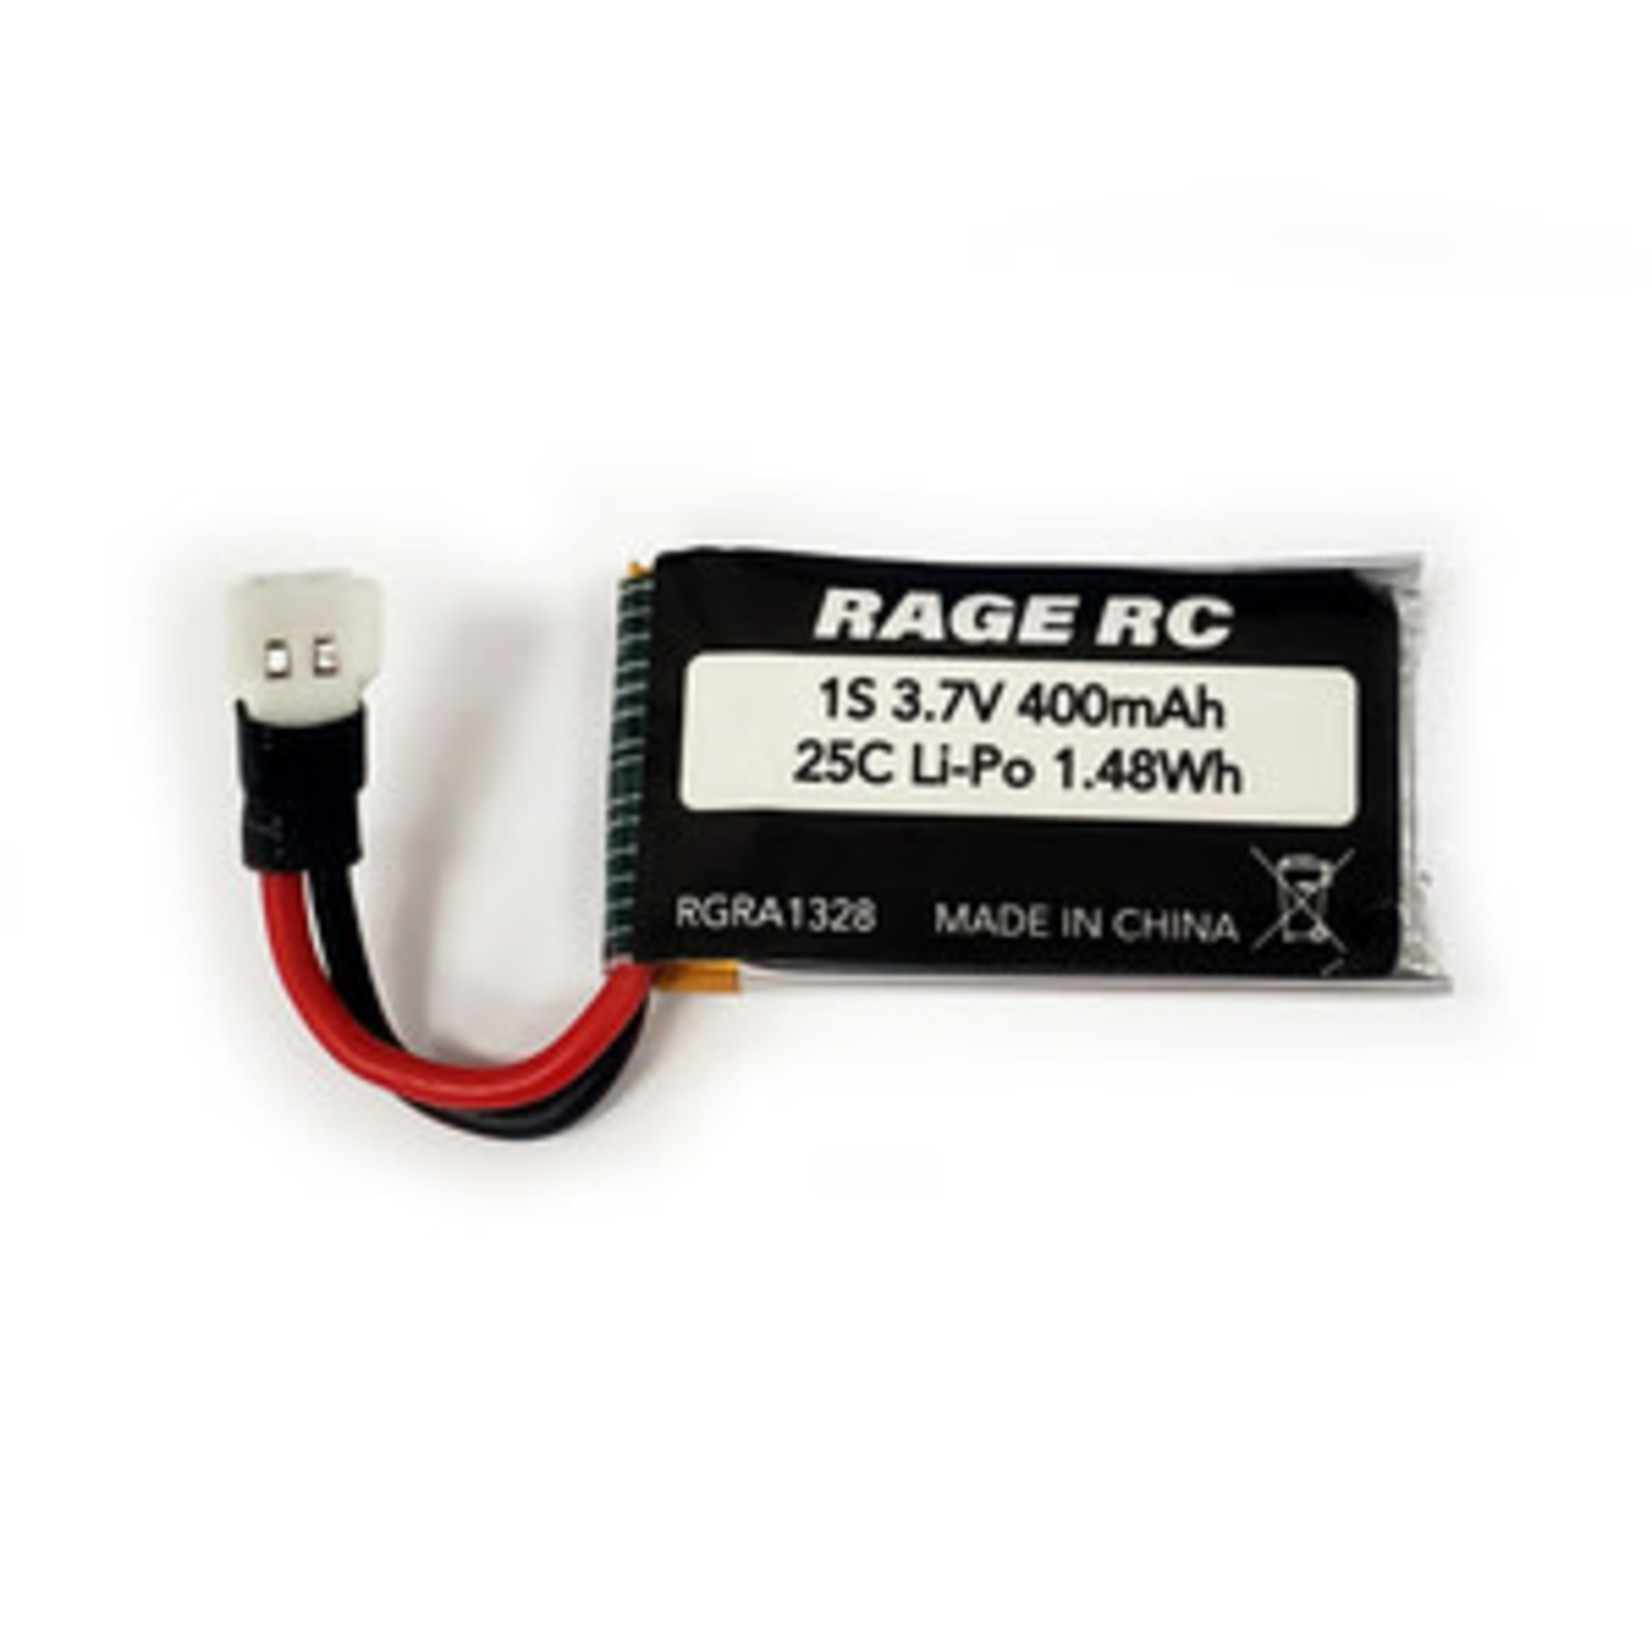 Rage R/C 3.7V 400mAh 25C LiPo Battery; Micro Warbirds, Tempest 600, Super Cub MX, Super Cub MX4